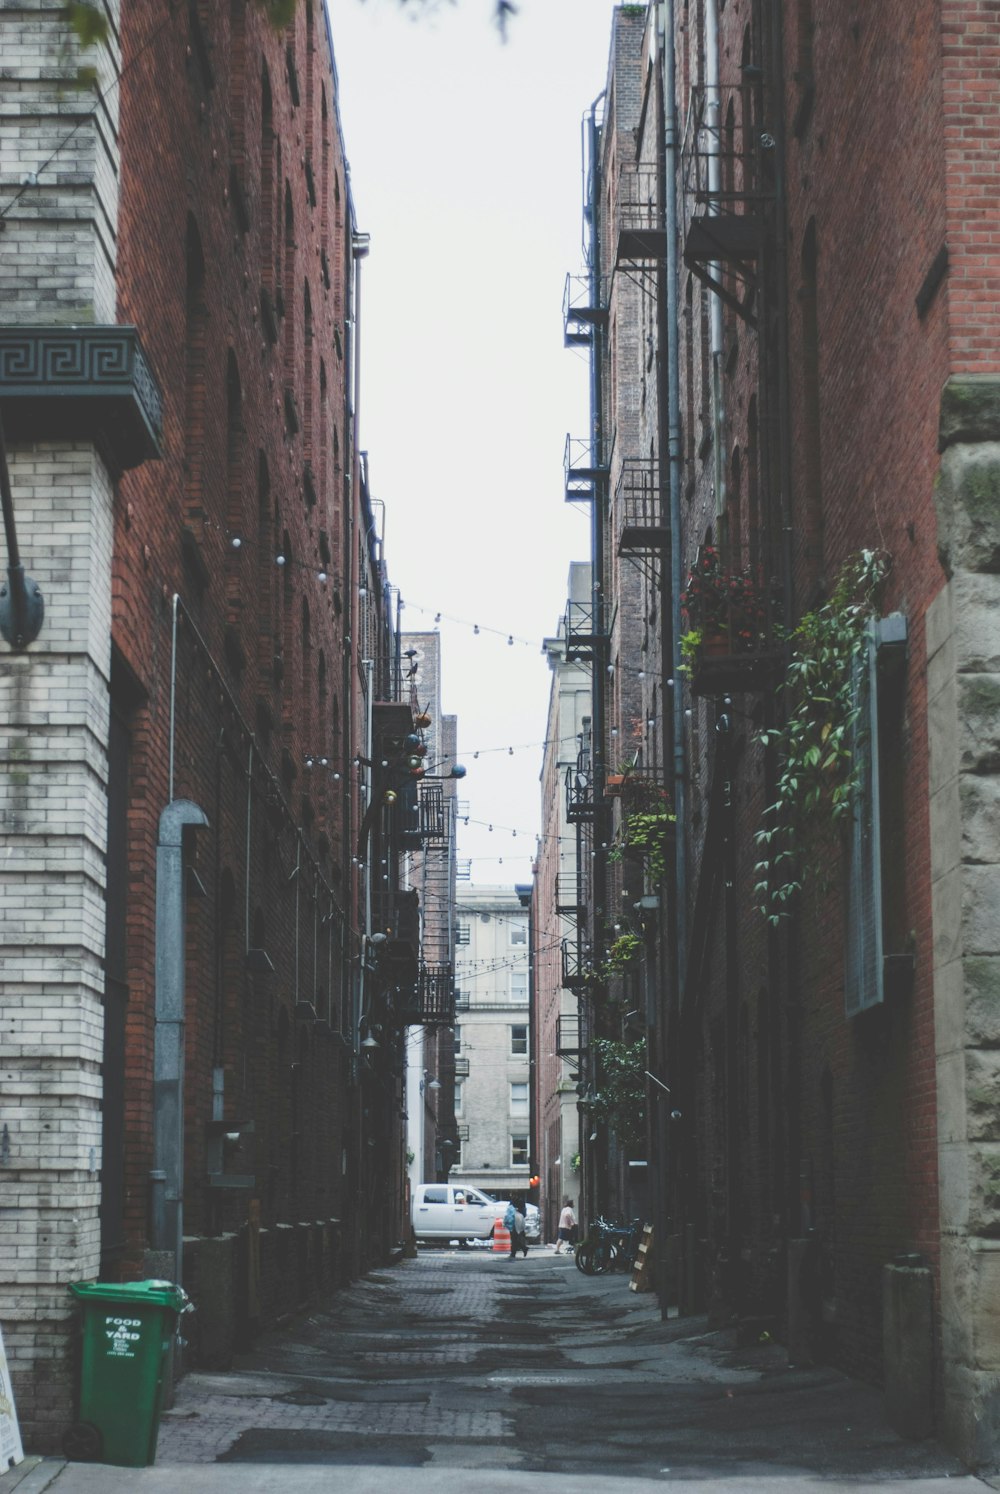 a narrow alley way between two brick buildings